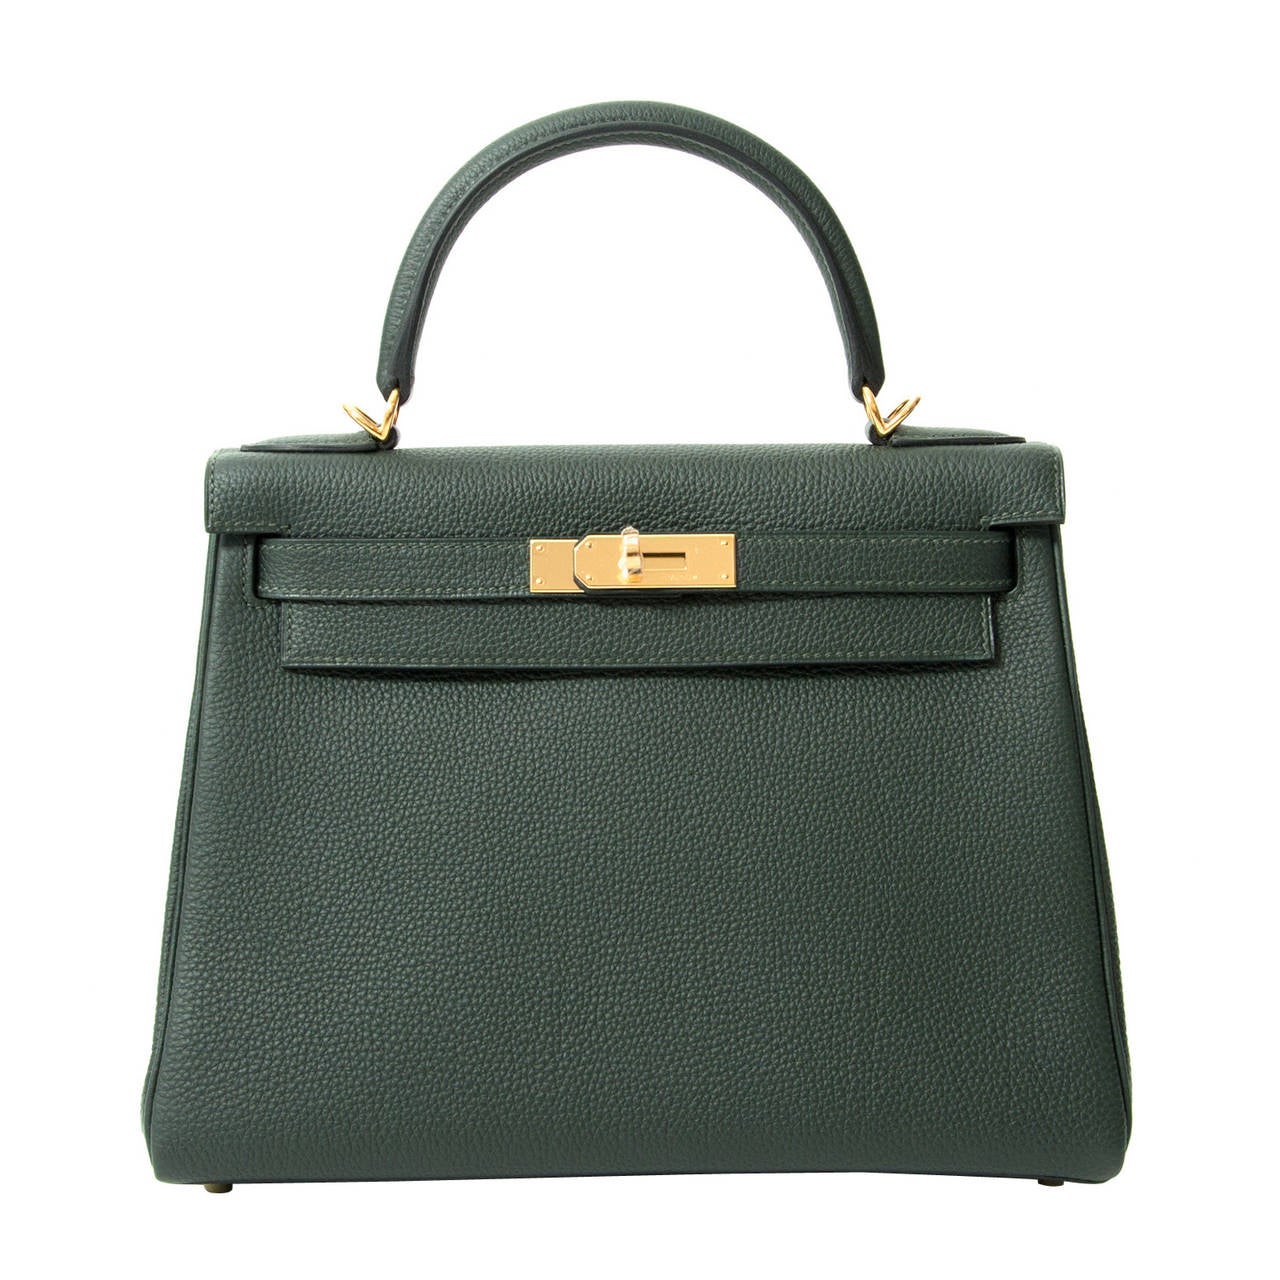 BRAND NEW Hermès Kelly Bag 28 Togo Vert Fonce GHW With Shoulder Strap at 1stdibs